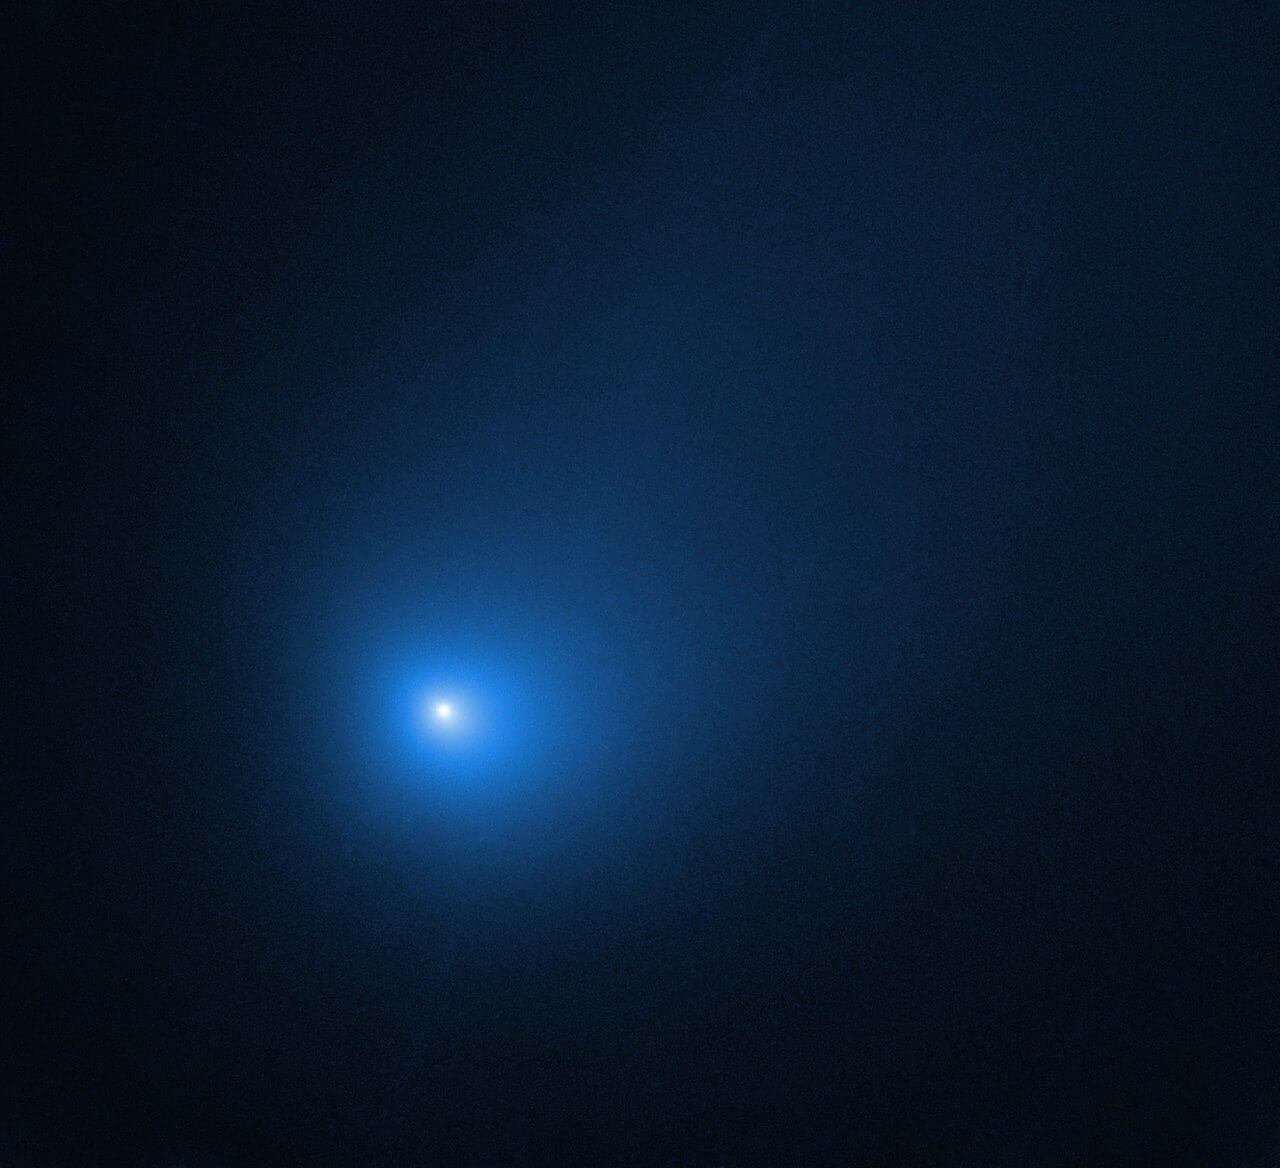 השביט בוריסוב כפי שצולם בדדצמבר 2019 על ידי טלסקופ החלל האבל של נאס"א וESA